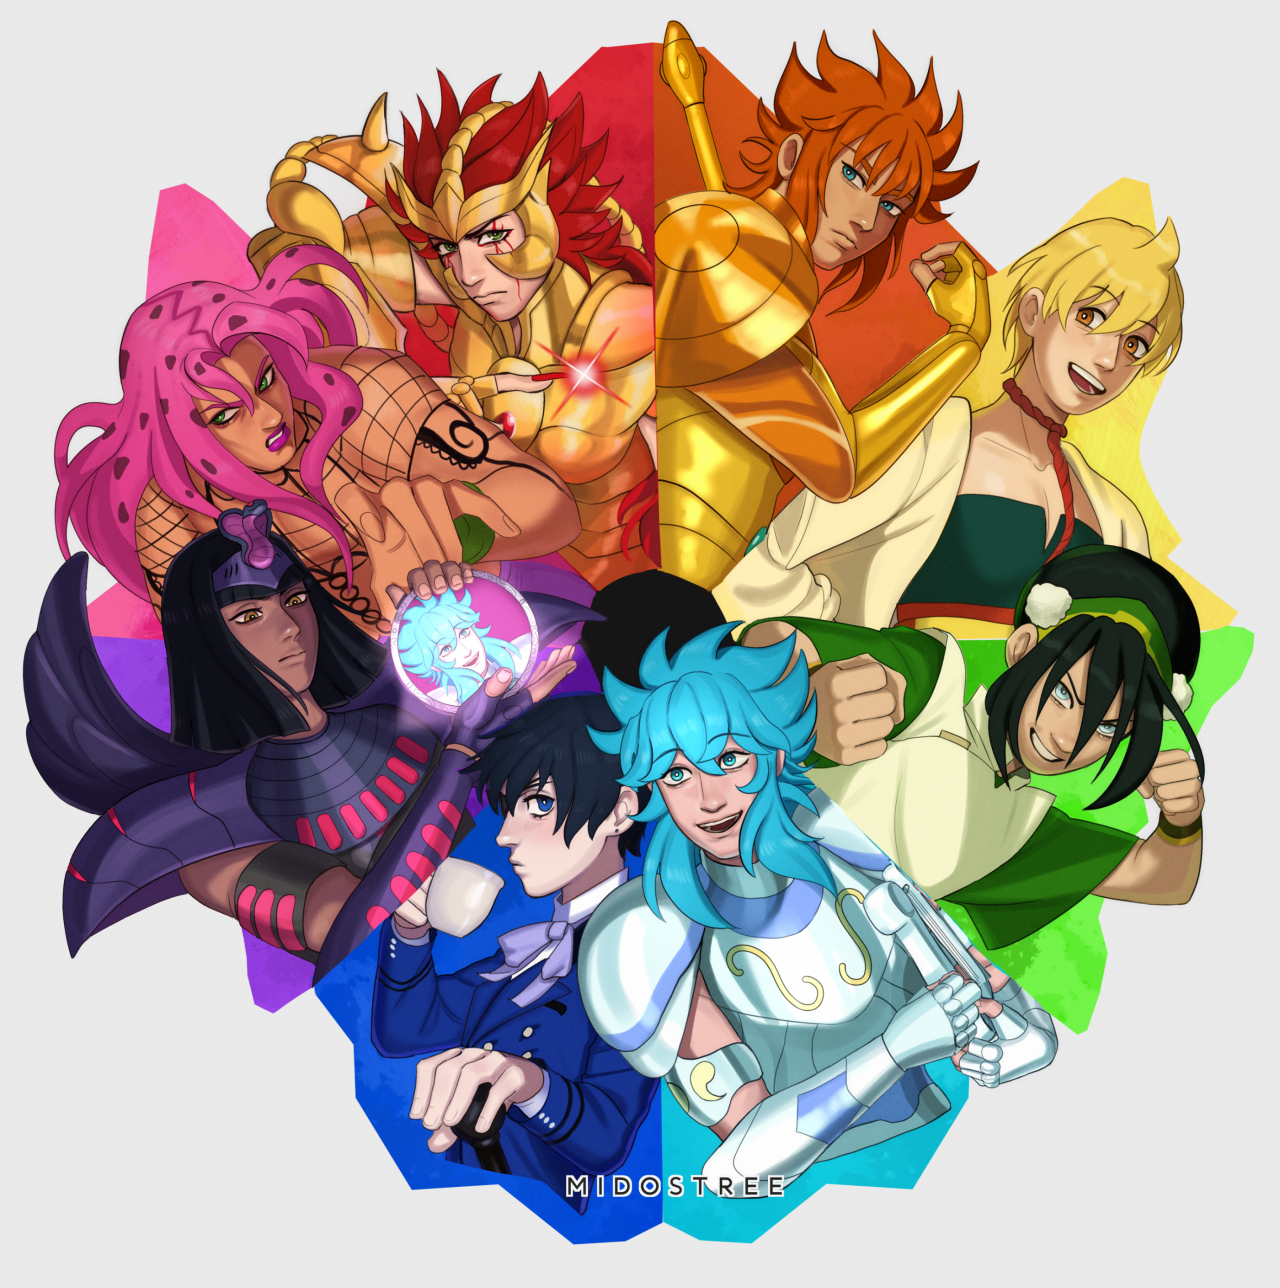 Cavaleiros do Zodíaco Ômega!!! ❤❤❤❤❤❤❤❤❤❤❤  Cavaleiros do zodiaco,  Cavaleiros do zodiaco anime, Cavaleiros do zodiaco seiya